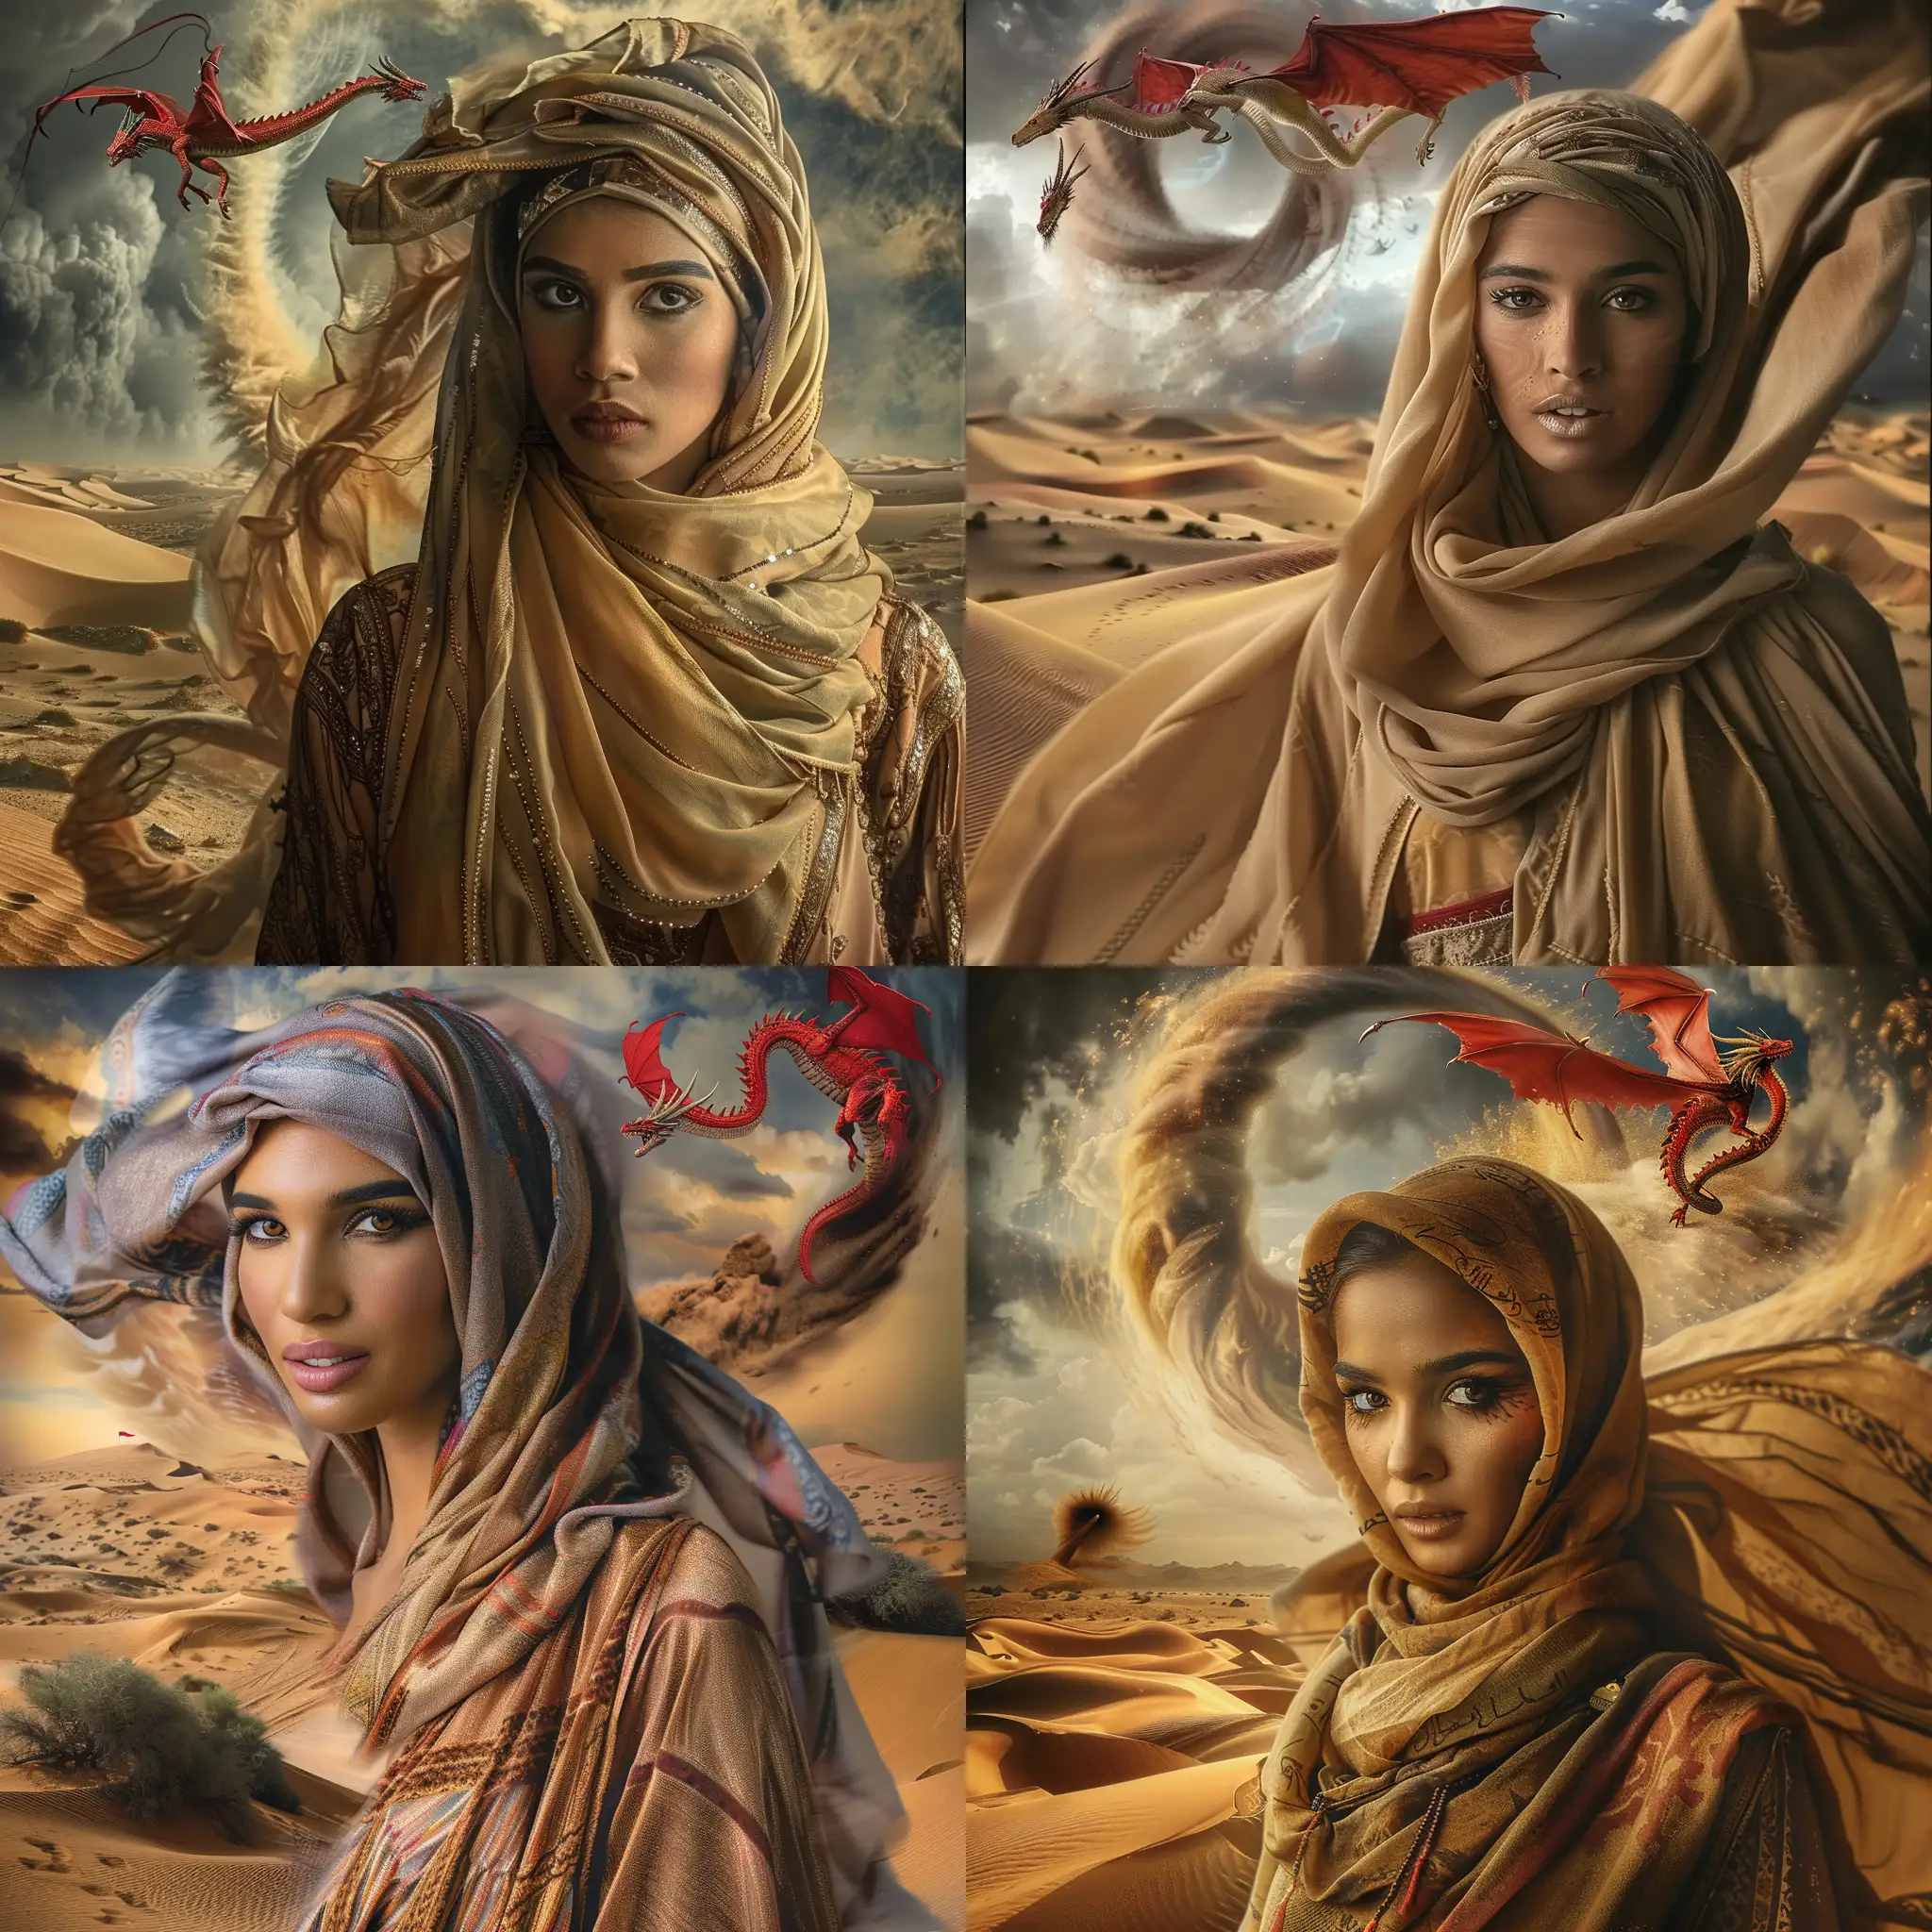 Mystical-Arabian-Woman-in-WindBlown-Desert-with-Flying-Dragon